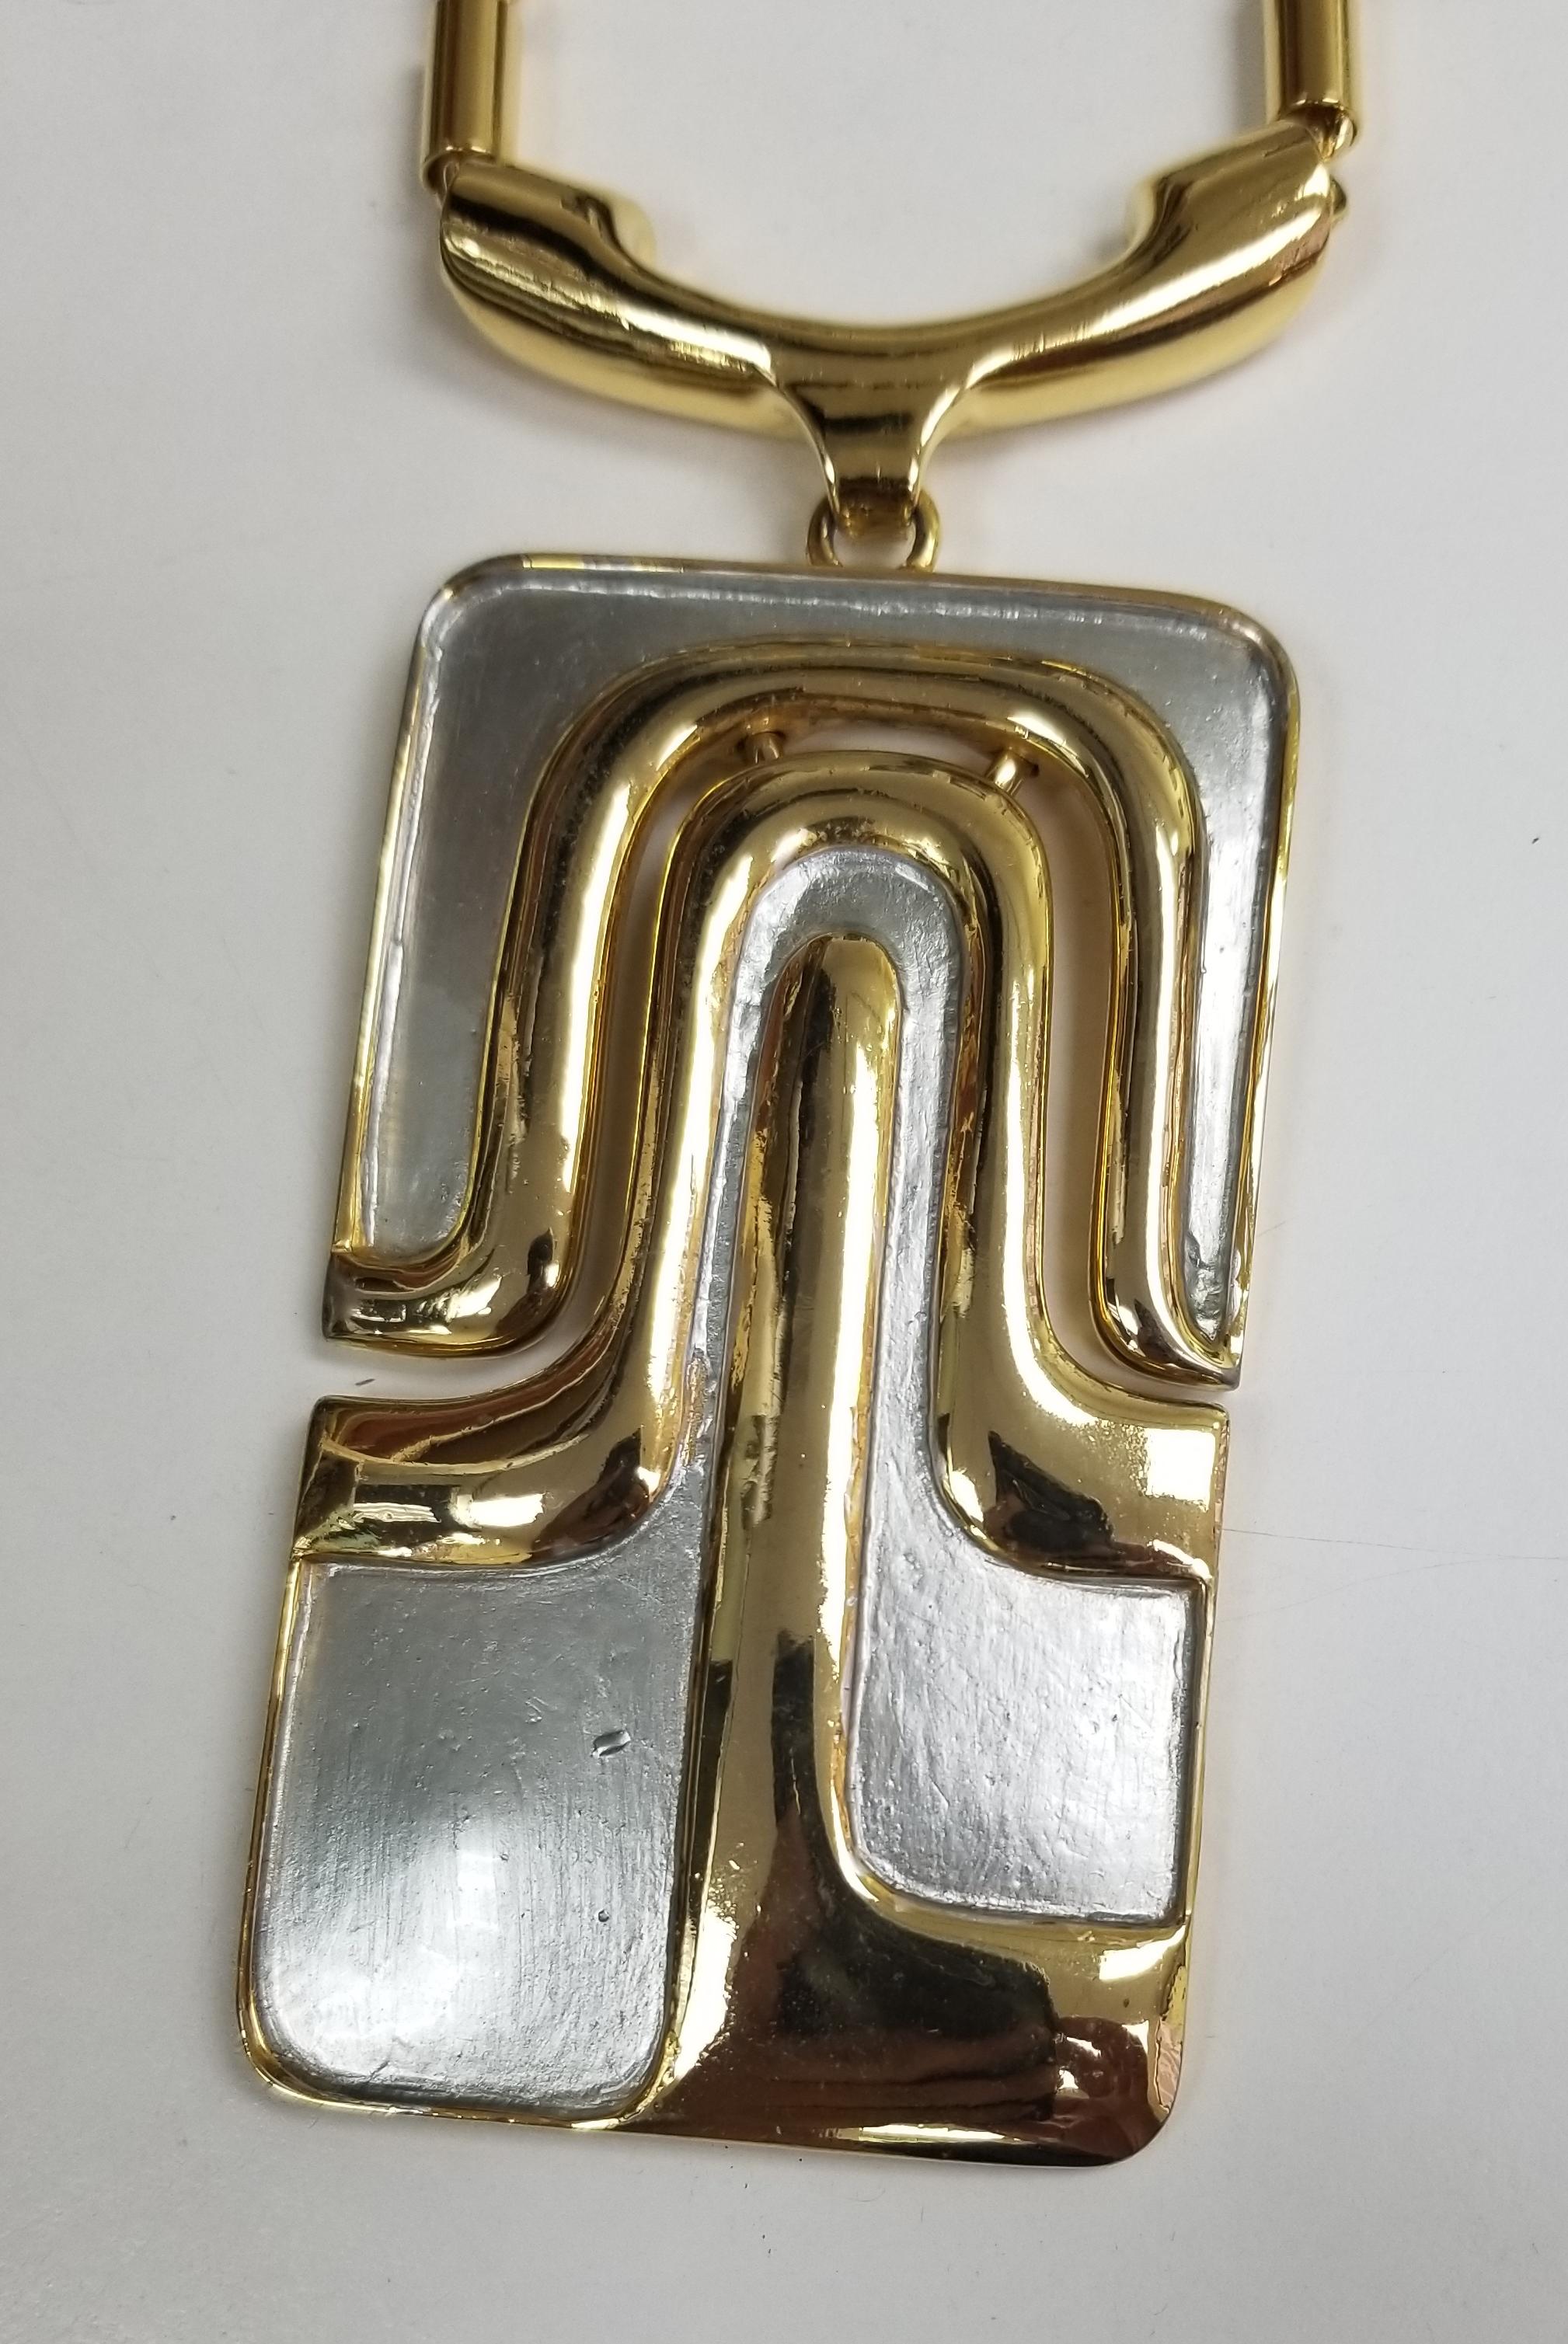 Pierre Cardin Vintage modernes Collier aus Gold und weißem Metall.  Der Anhänger ist fast 5